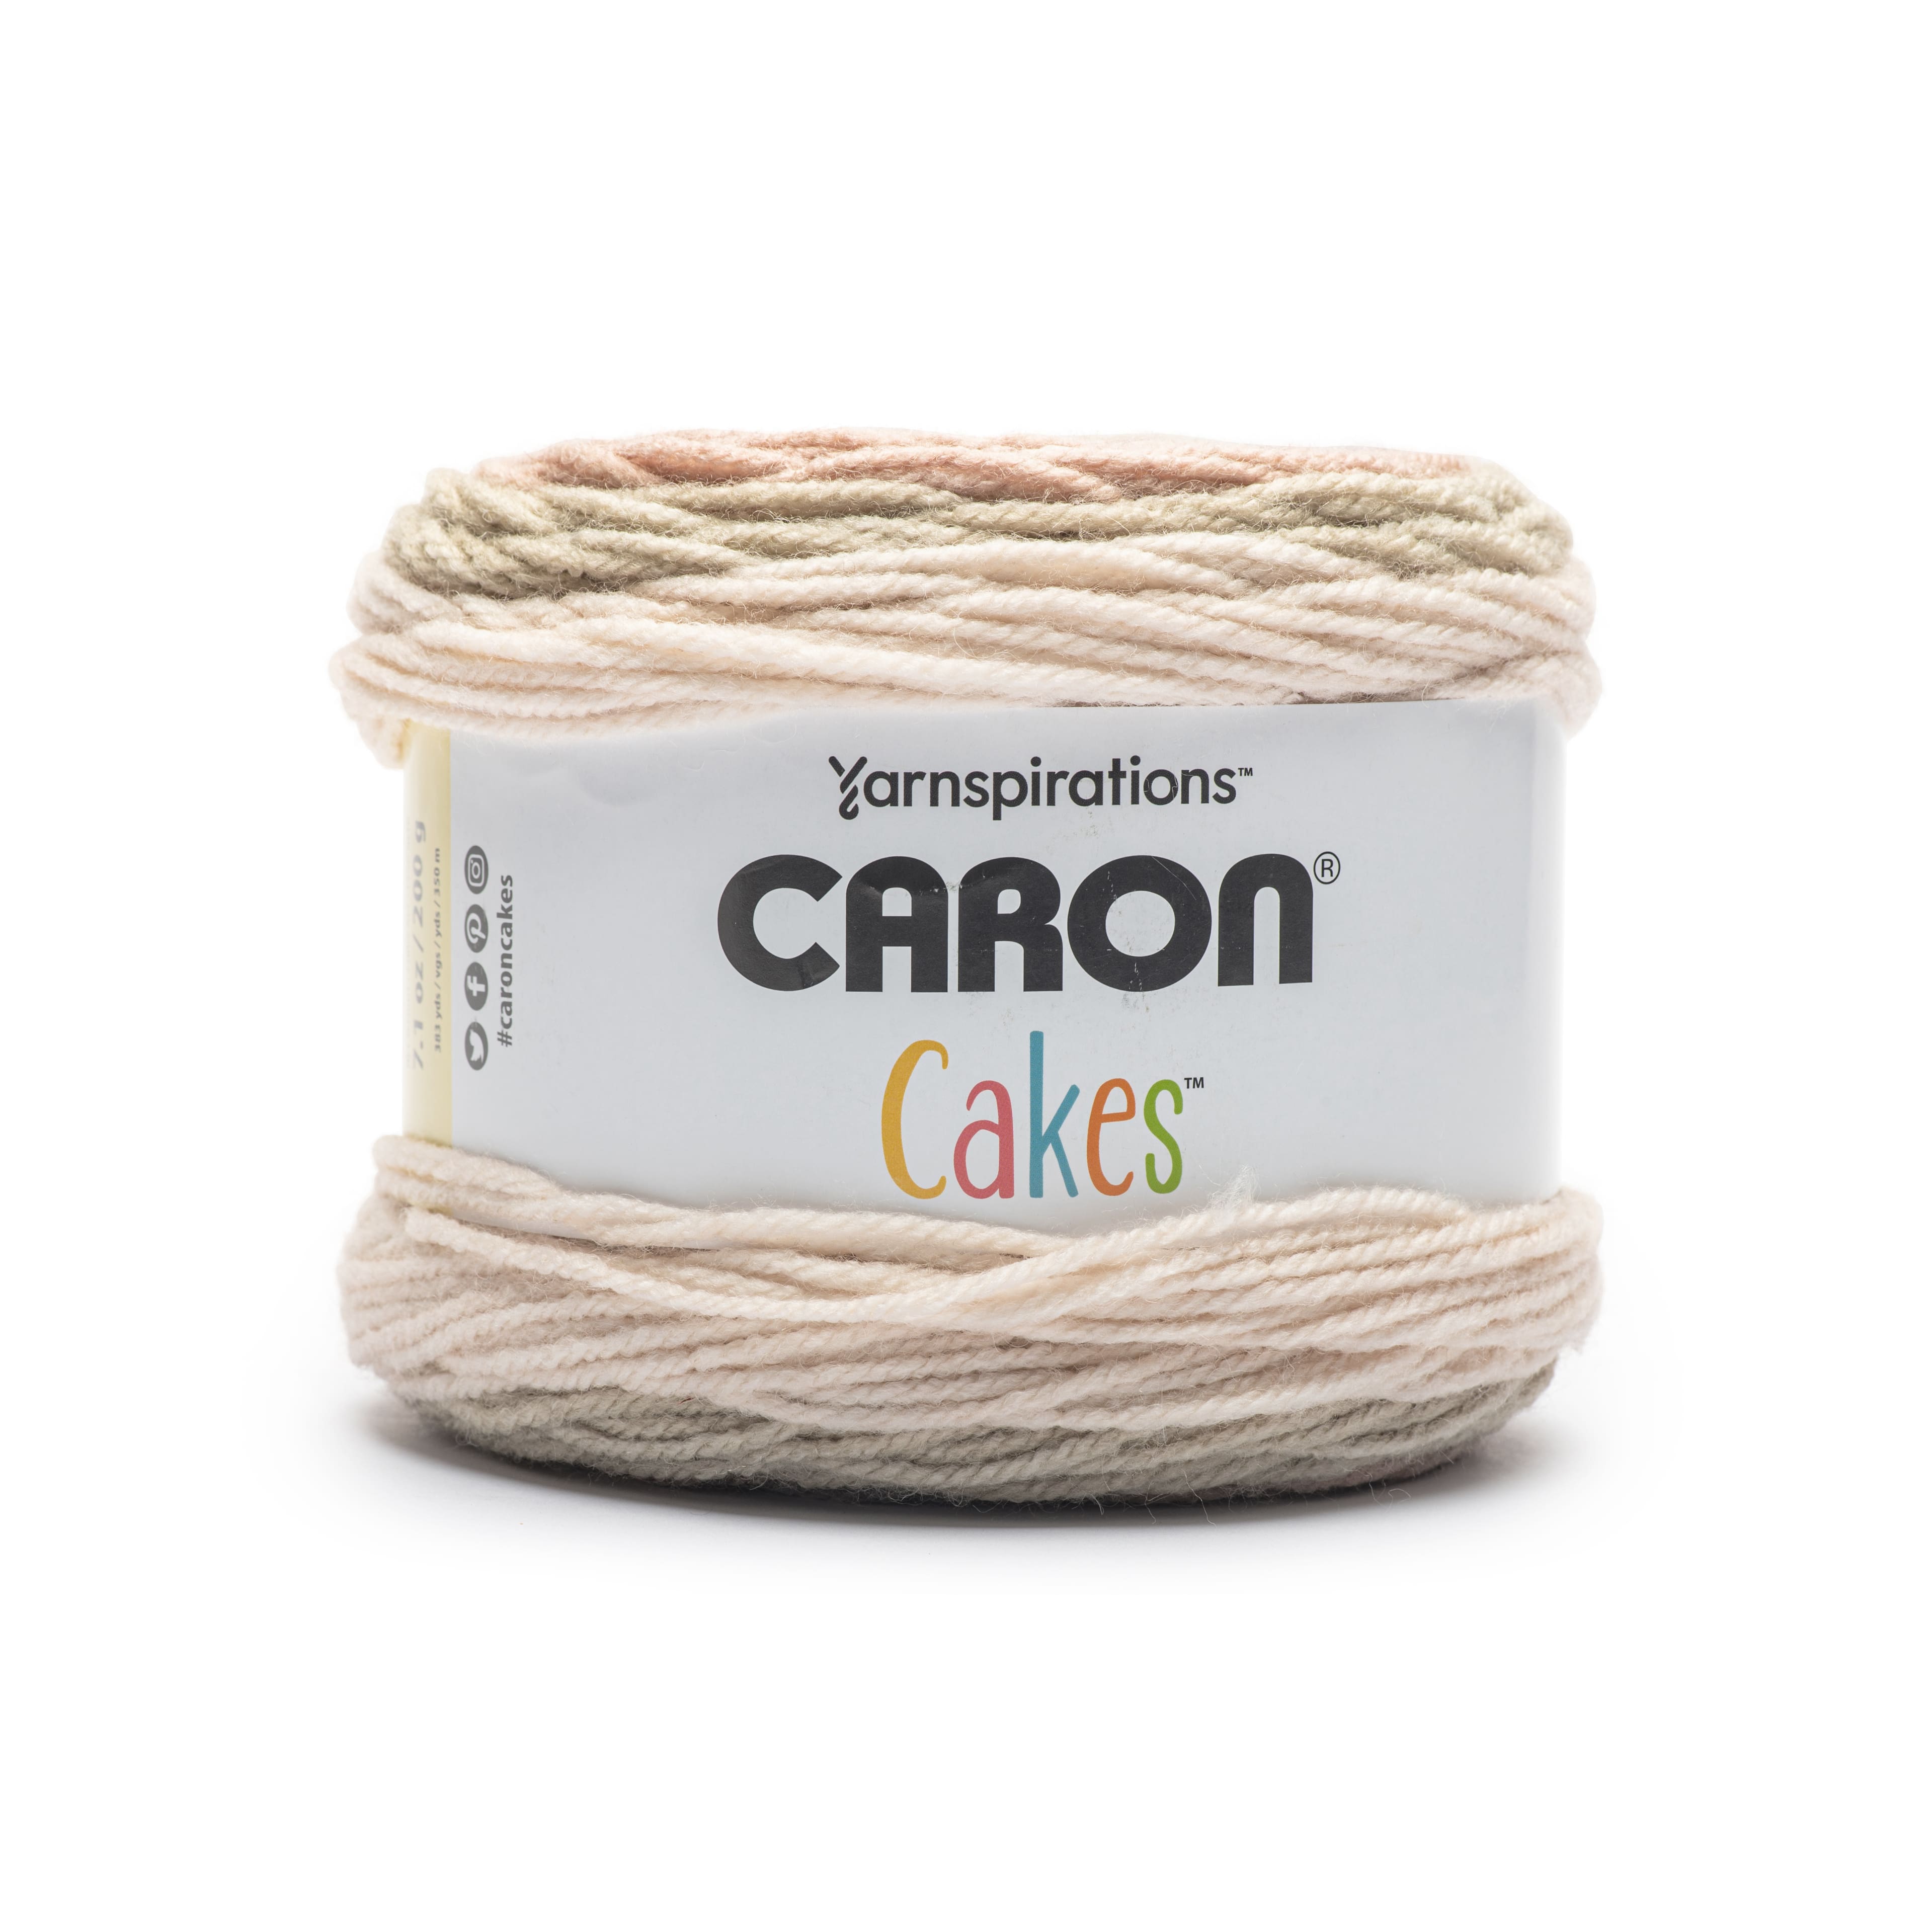 NEW Caron Cakes 